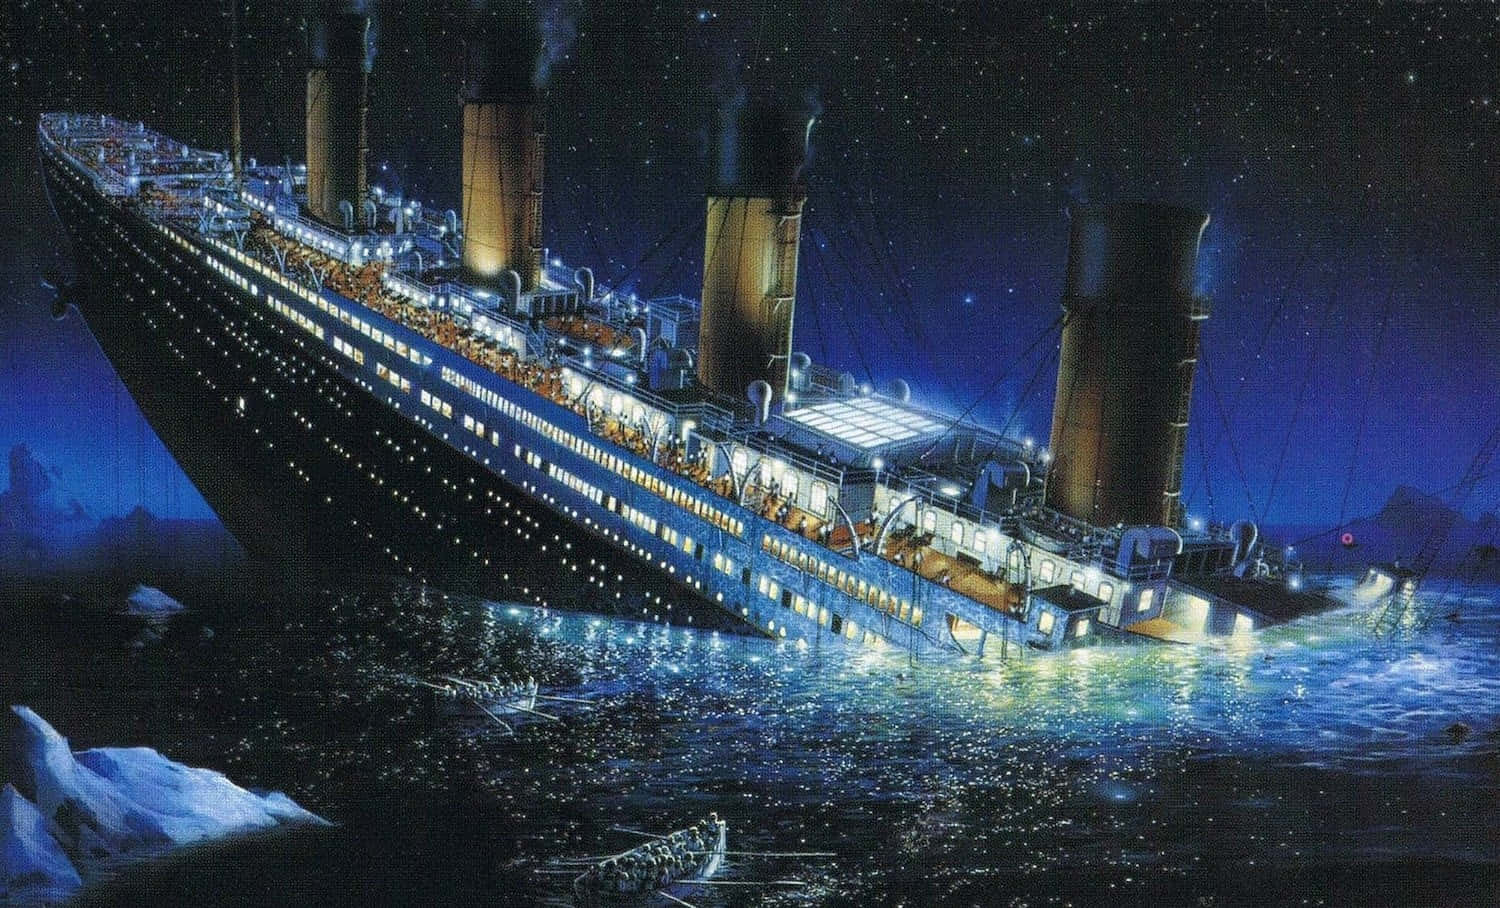 Elicónico Barco Titanic Navega A Través De Las Aguas Abiertas.